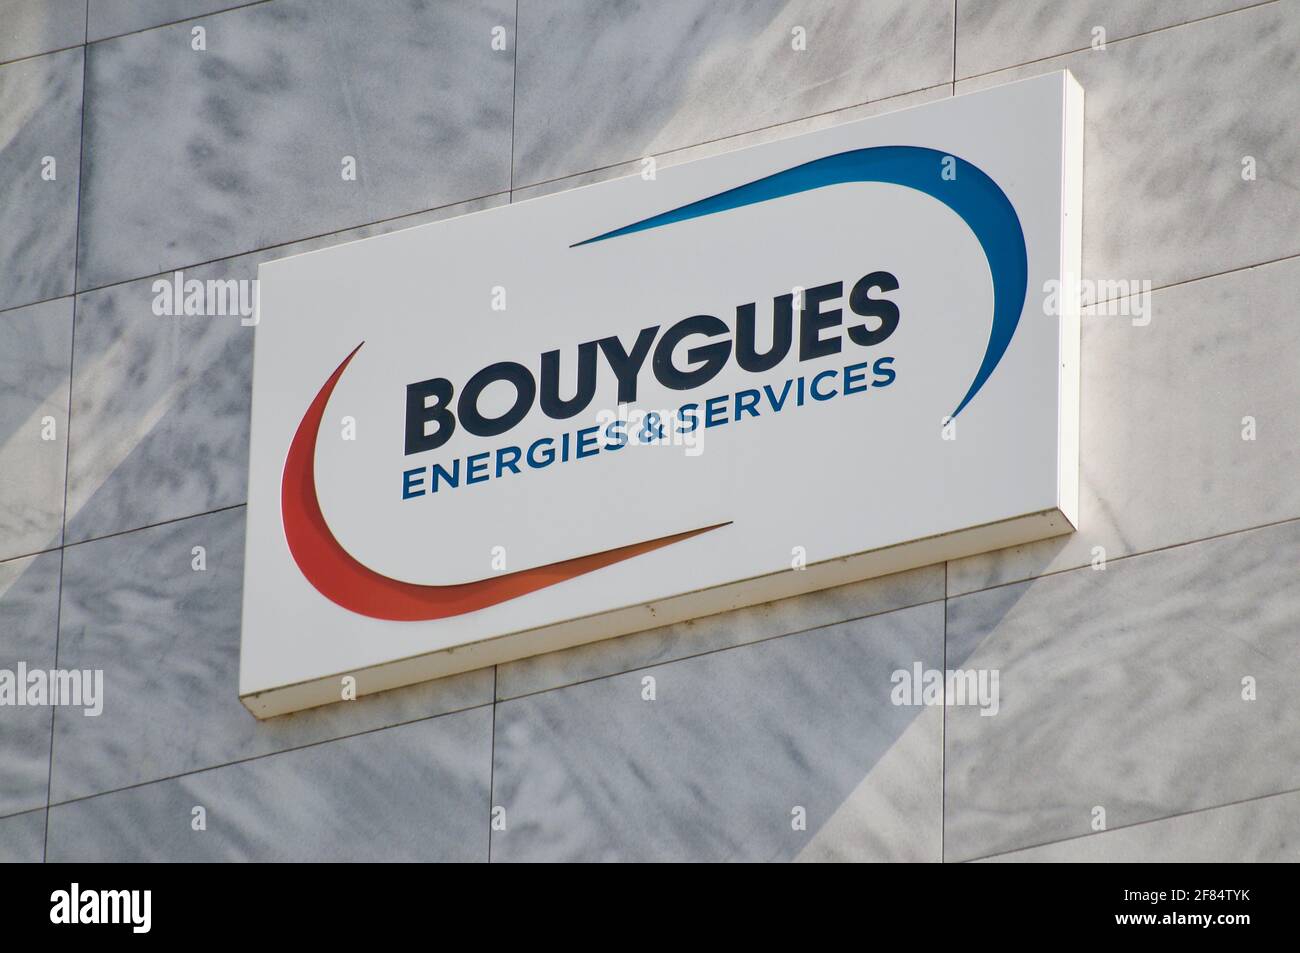 Zug, Suisse - 28 mars 2021 : panneau Bouygues Energis & Services accroché au bureau de Zug, Suisse. Bouygues énergies et servic Banque D'Images